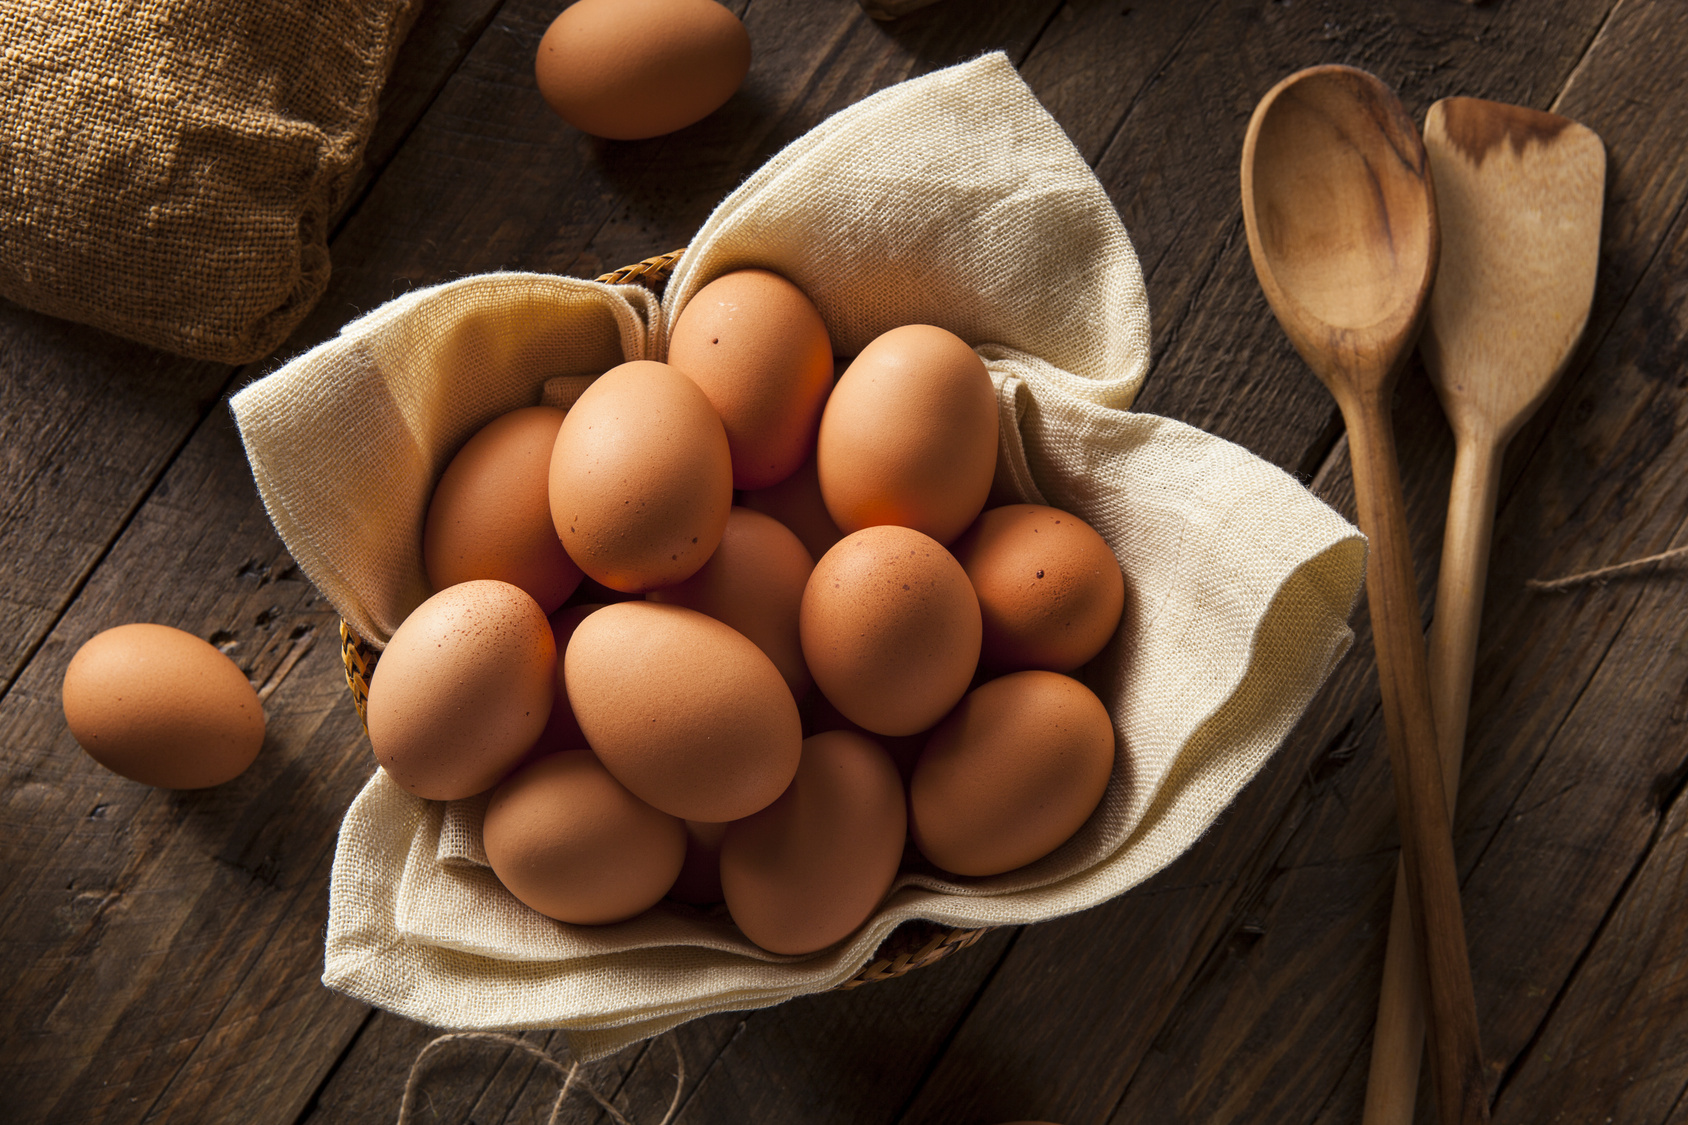 Le uova che stai usando sono fresche? Ecco 4 semplici trucchi per scoprirlo!